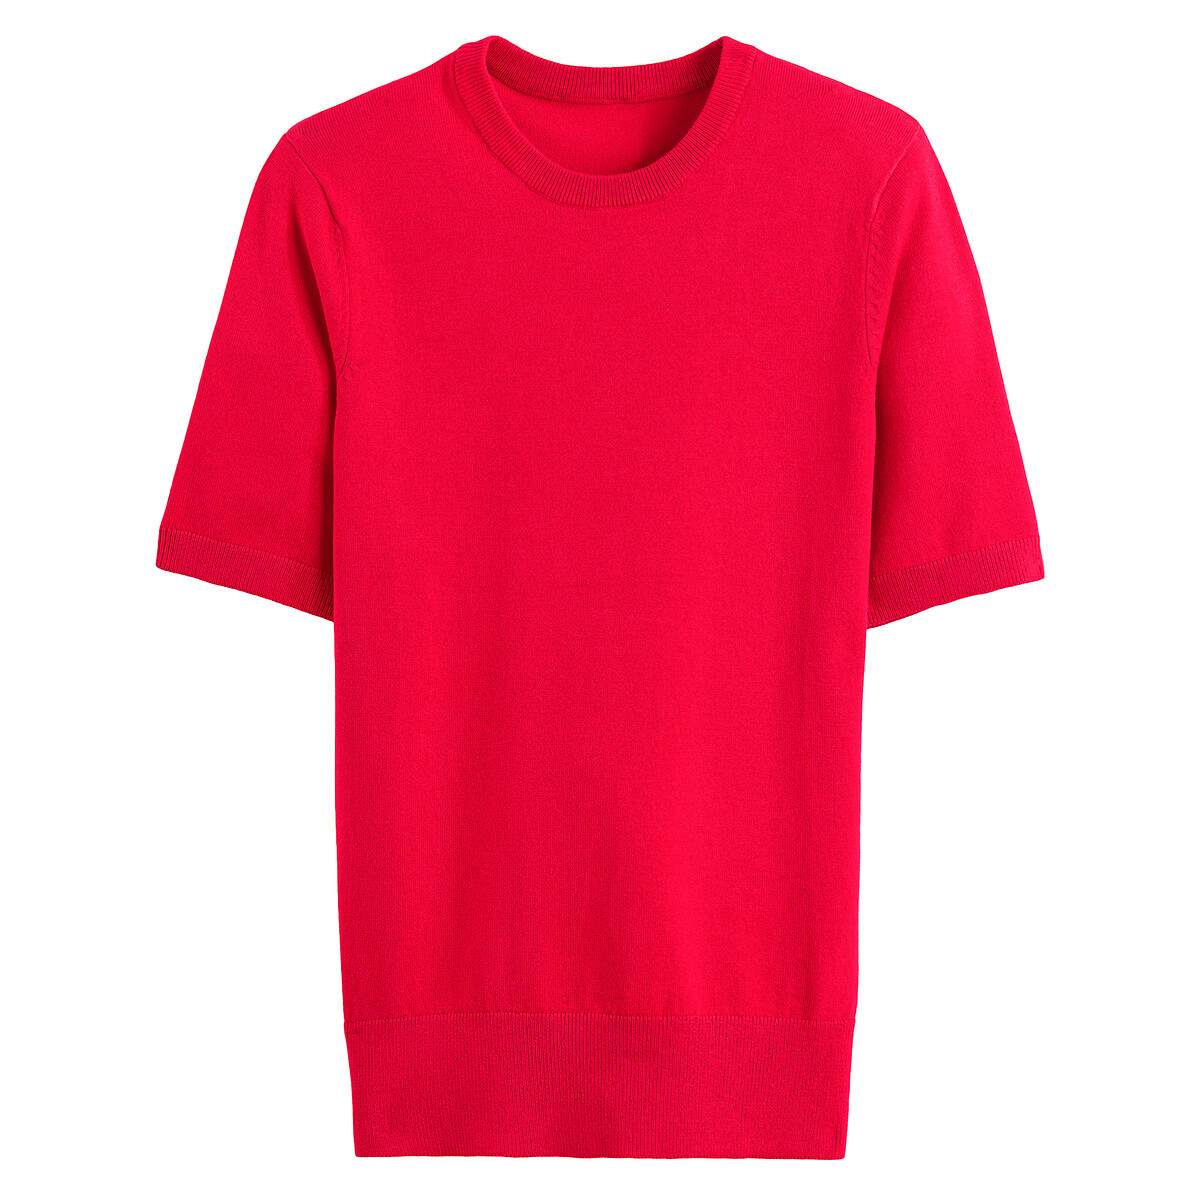 Пуловер Базовый с короткими рукавами S красный LaRedoute, размер S - фото 5